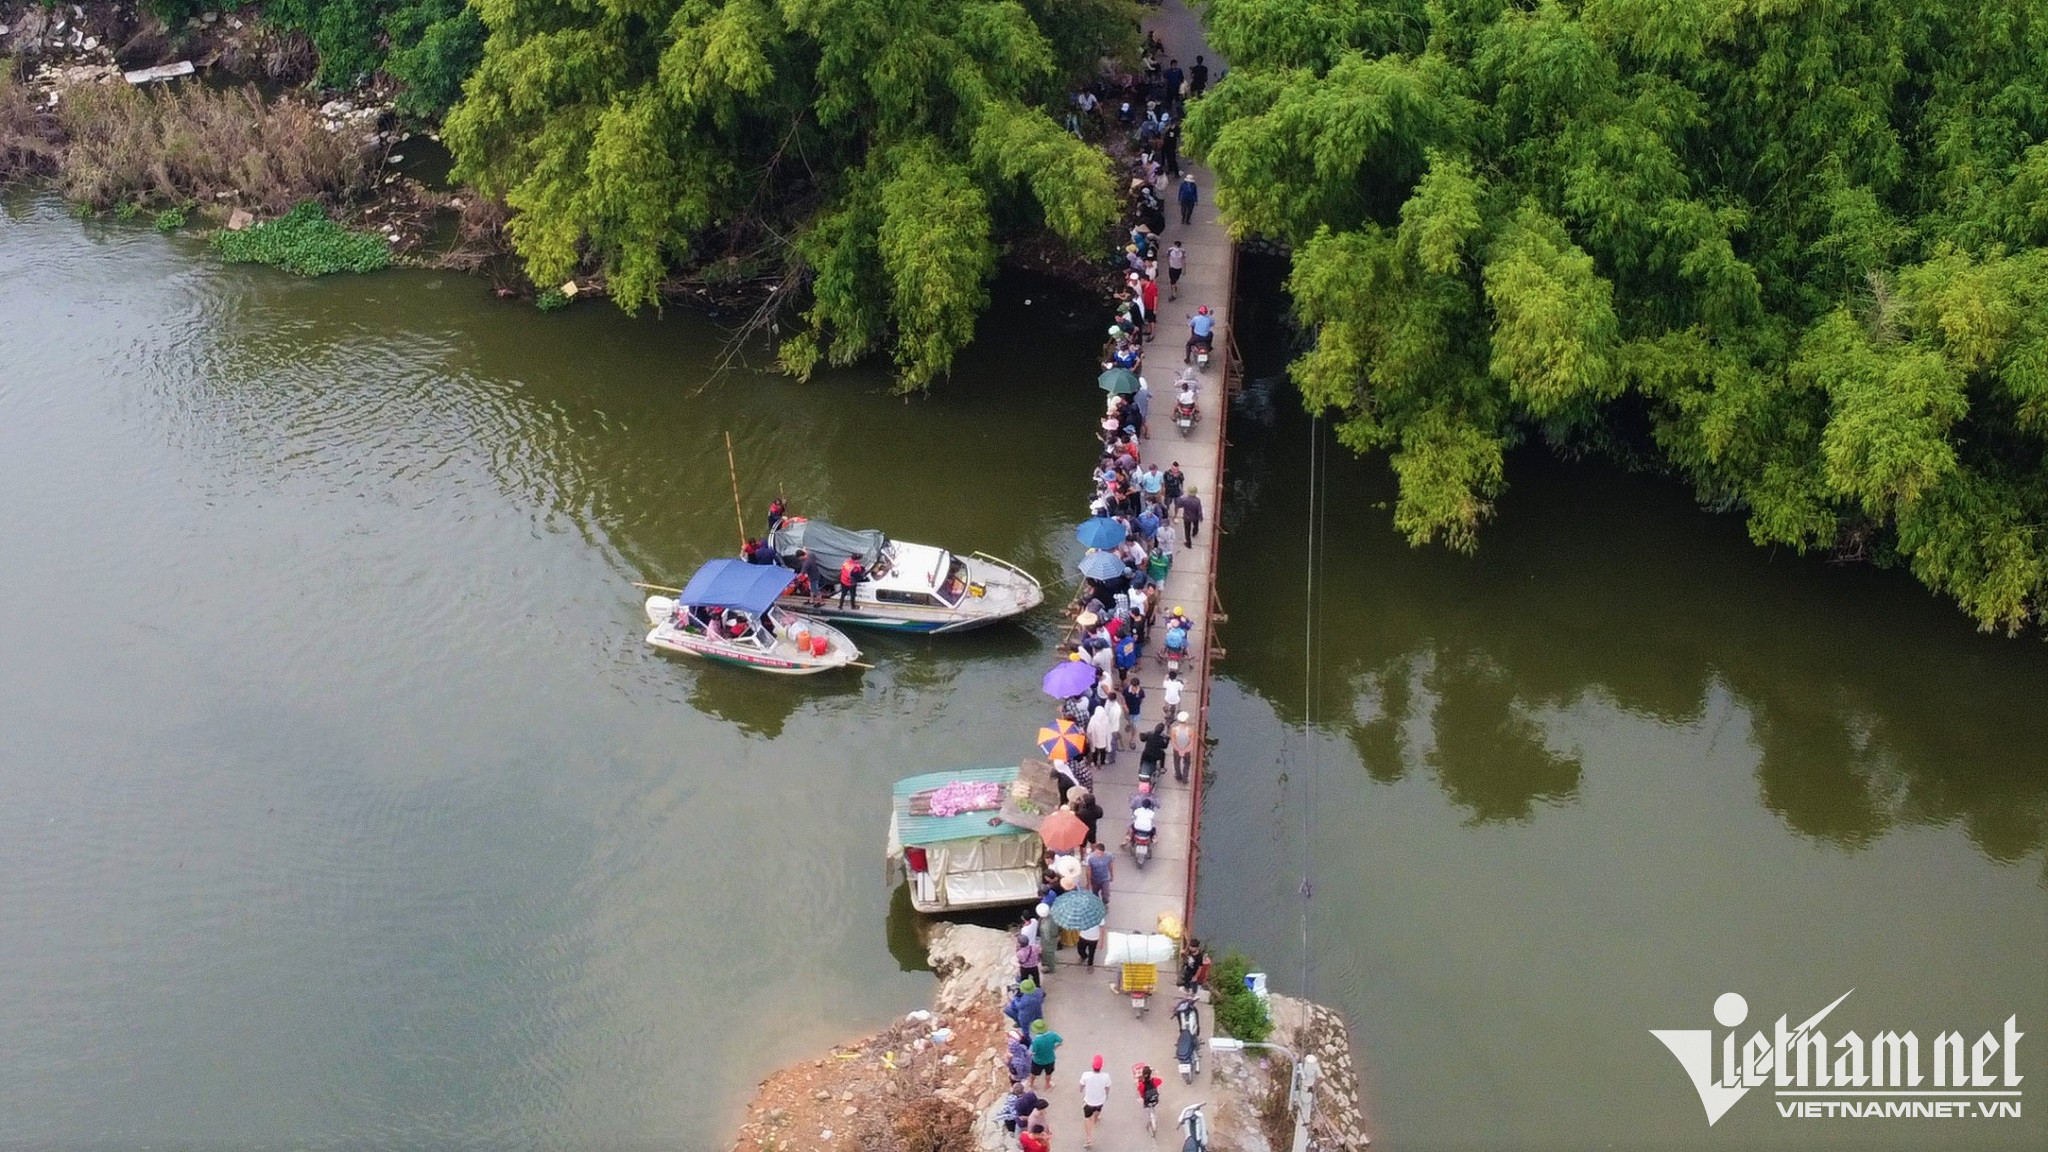 Đội cứu hộ 116 sử dụng 2 ca no với gần 20 thành viên, rà cả dước và trên bờ quanh khu vực quanh cầu Cù Sơn đỿếếến tìn.